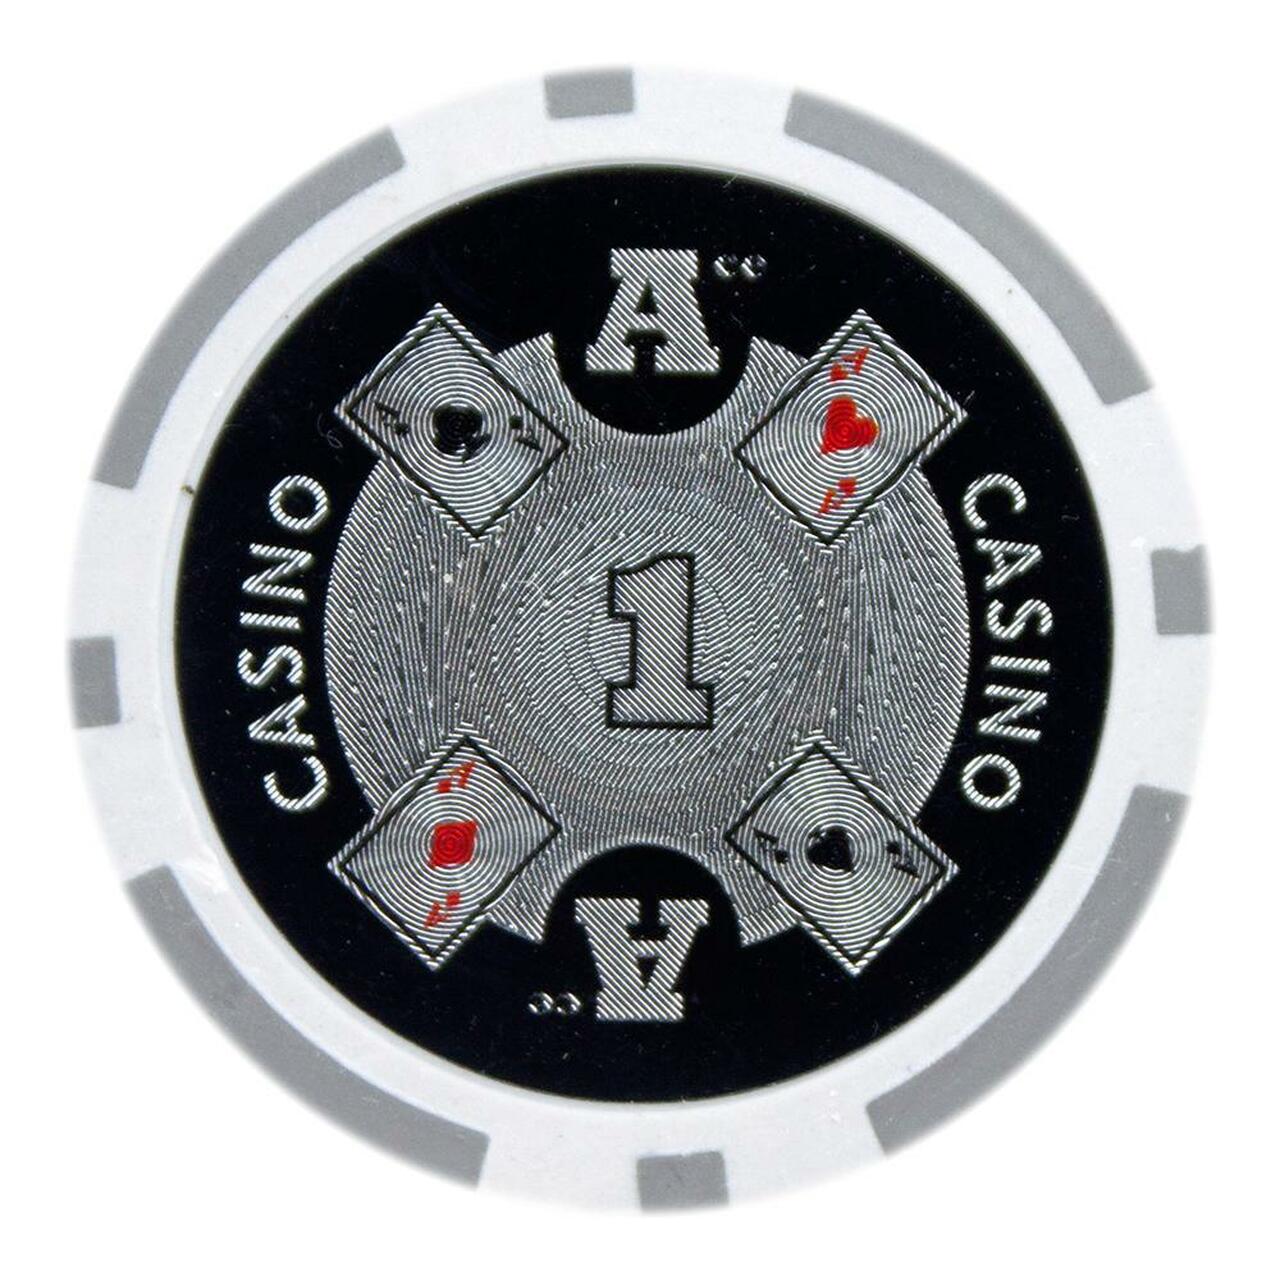 Silver ace casino